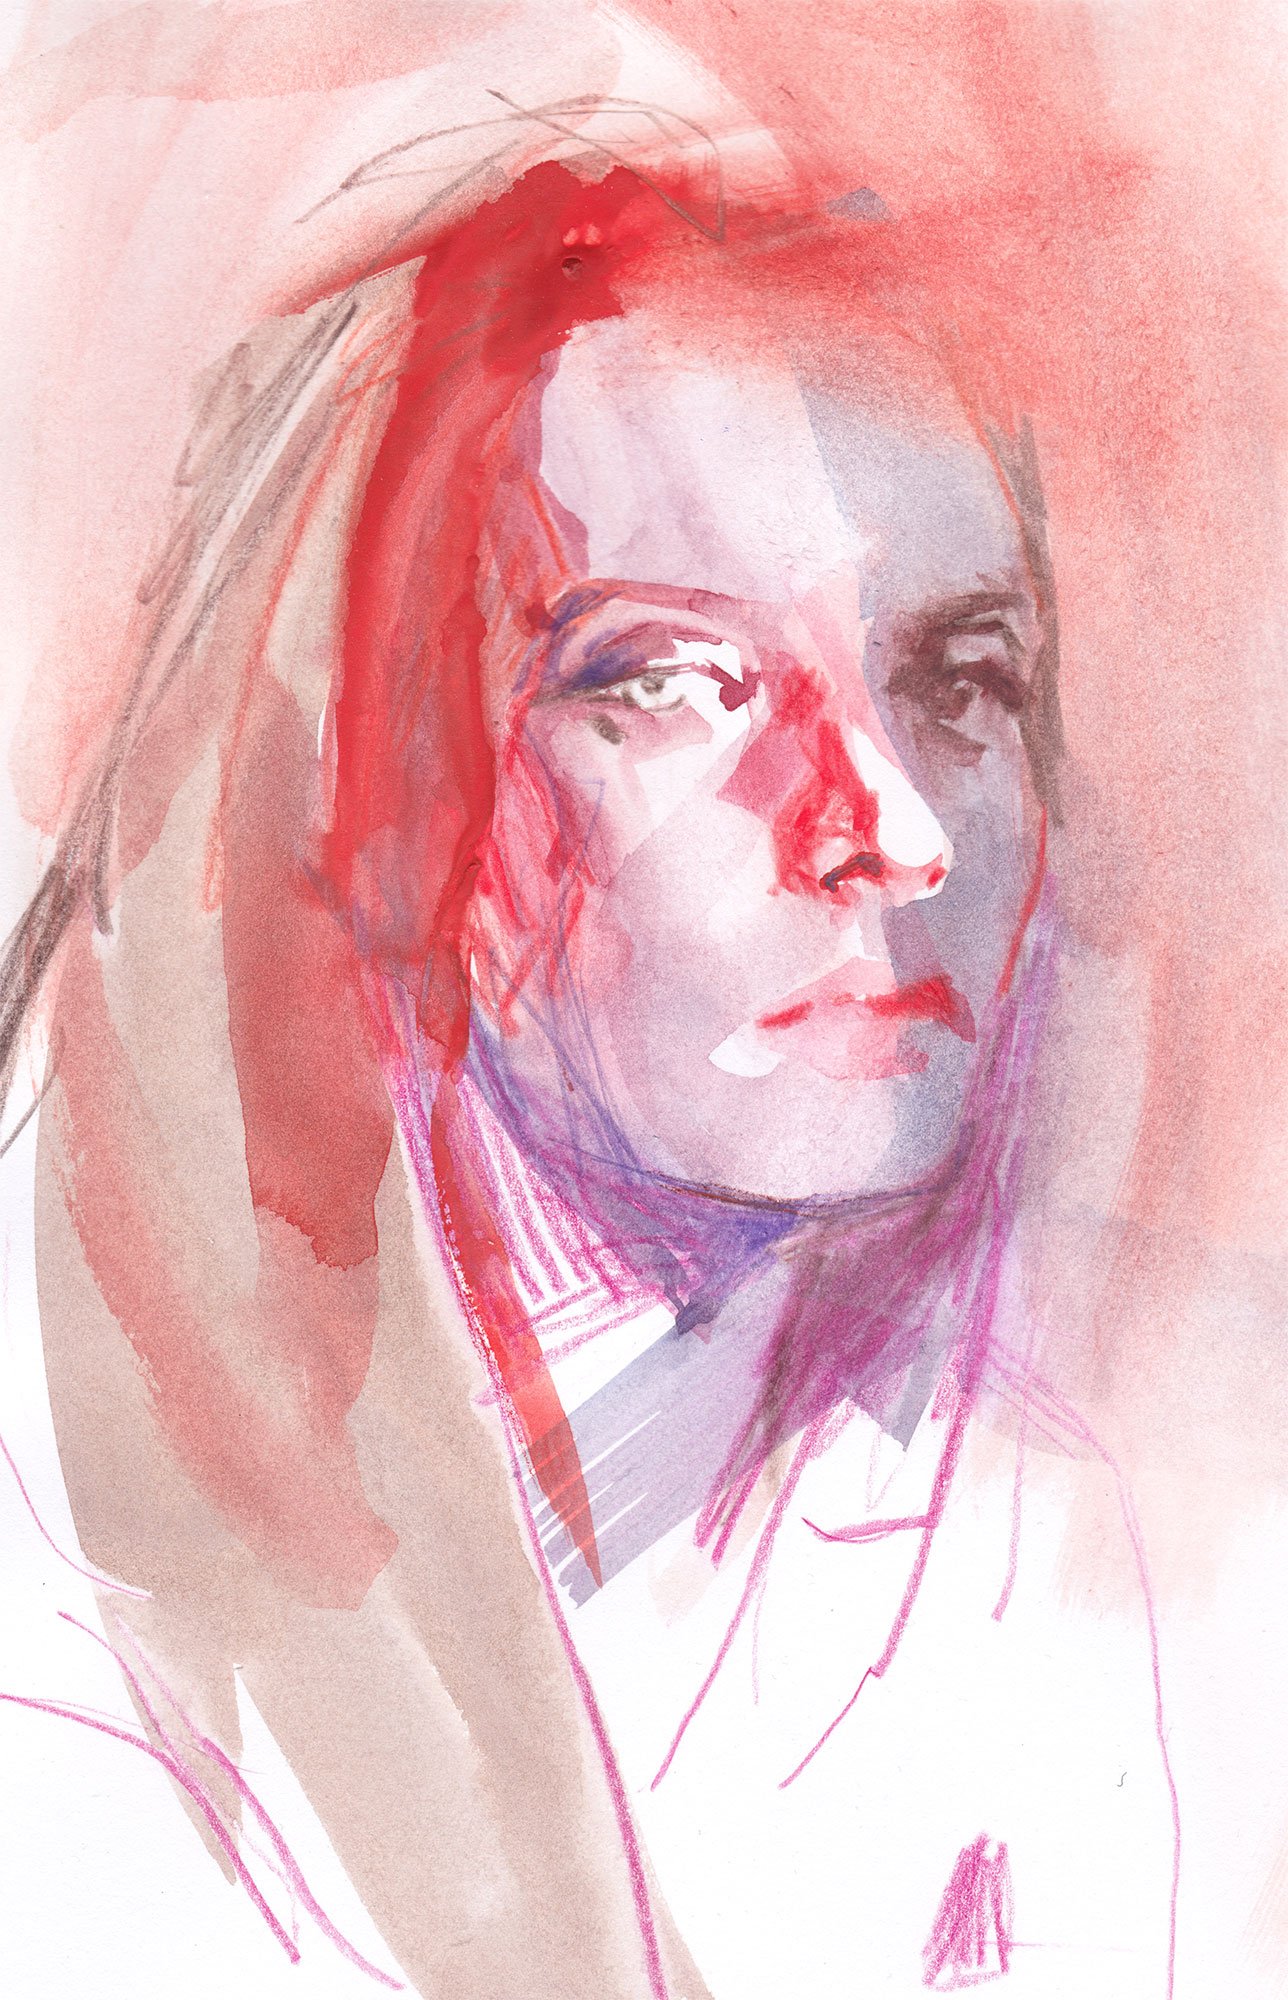 202402-portrait-abstrait-A4-watercolor-2.jpg